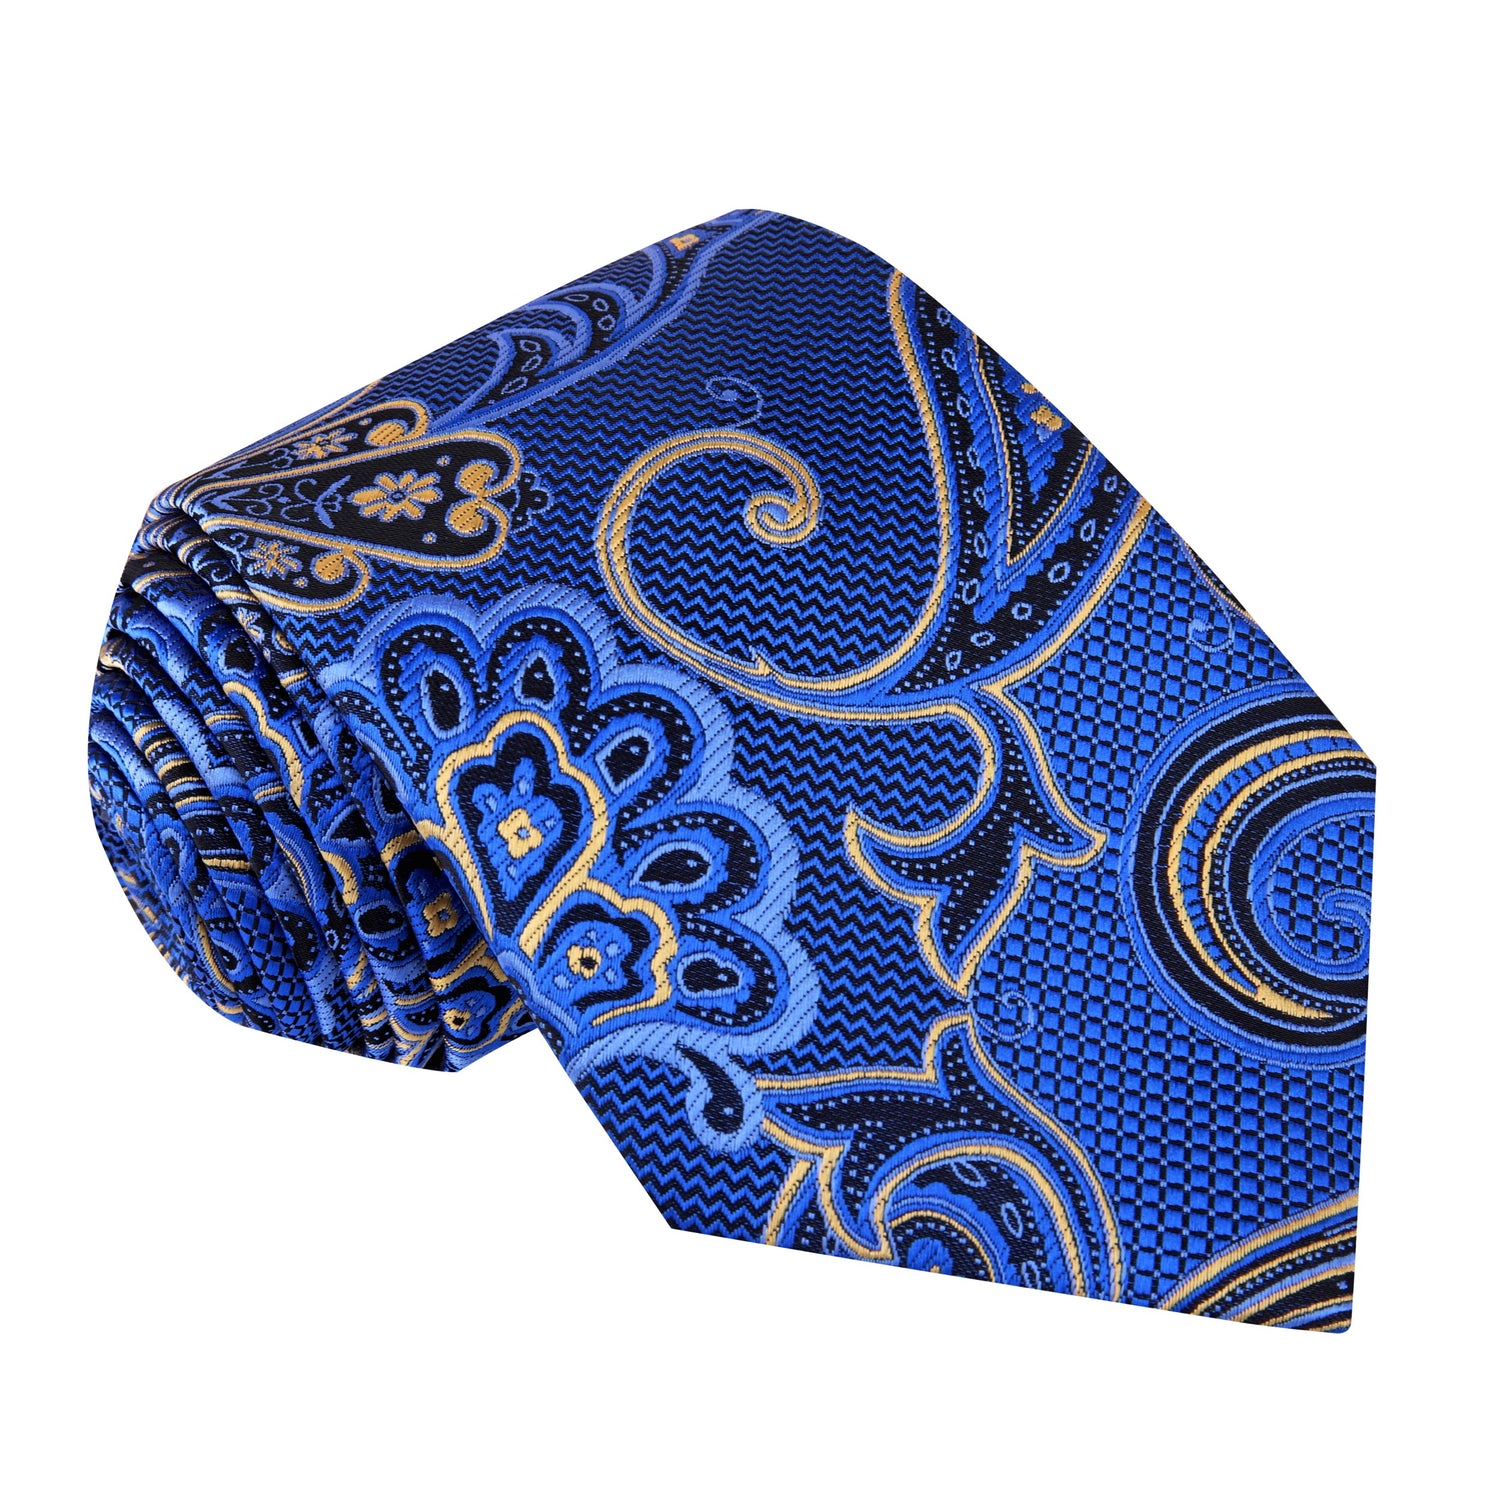 A Blue, Gold, Black Color Paisley Pattern Silk Necktie 